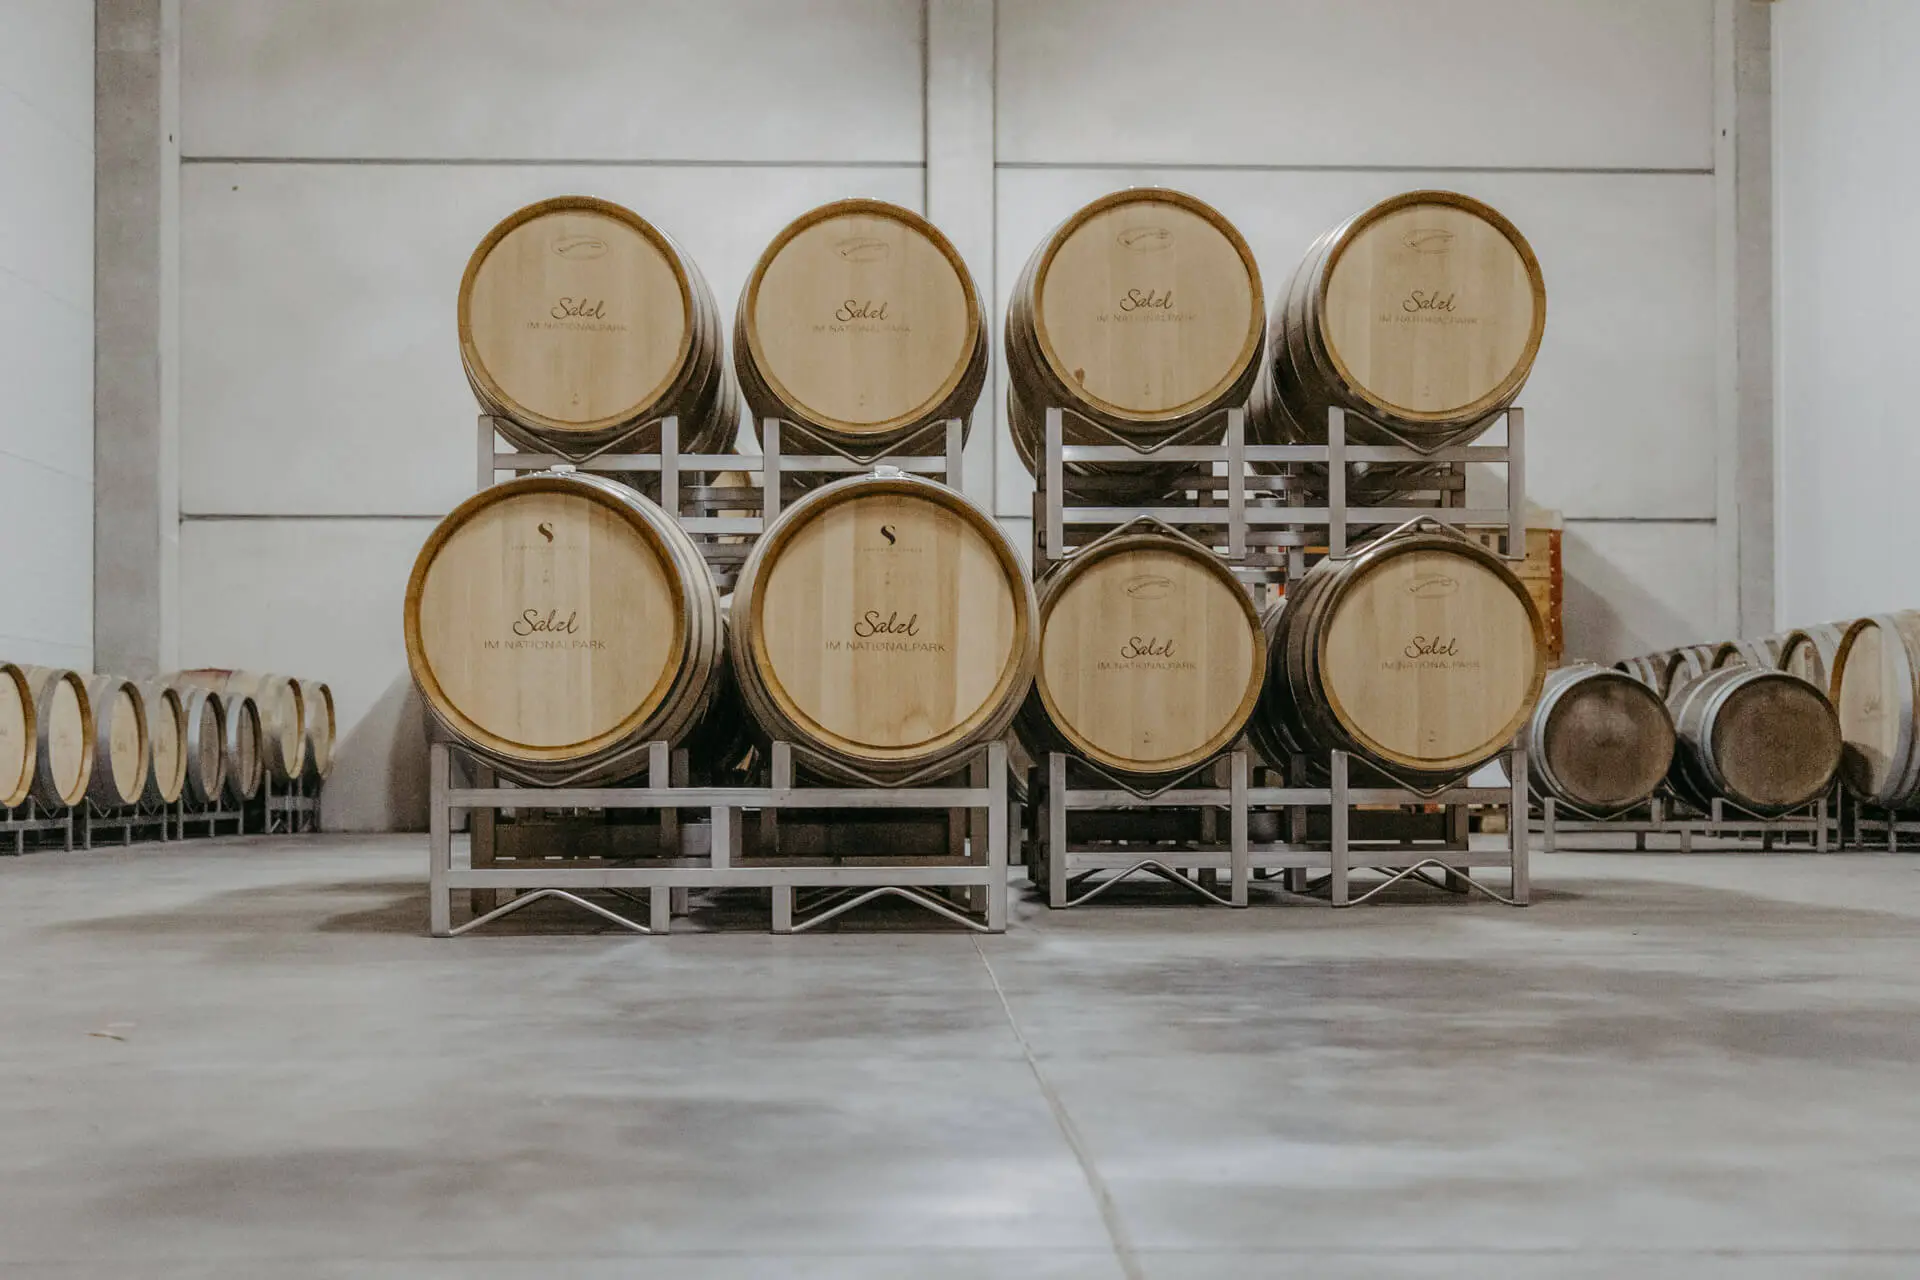 Gelagerte Weinfässer in einer großen Weinlagerhalle vom Weingut Salzl